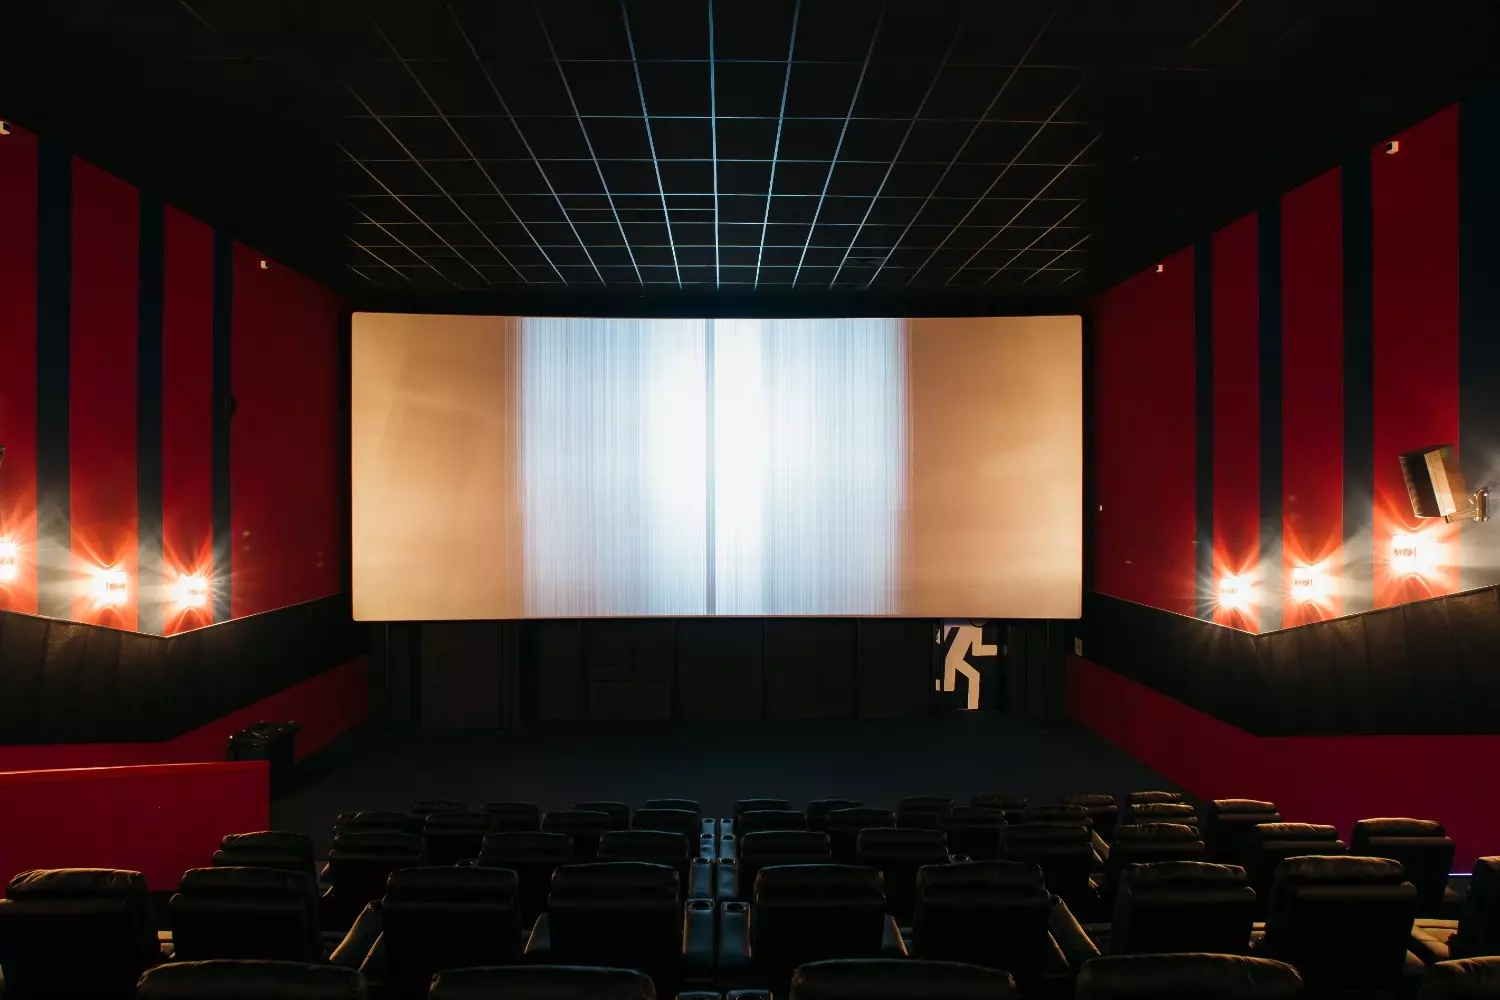 В кинотеатре мало сеансов, поскольку здесь всего один зал. Однако в нём находится самый большой экран в Белгороде.